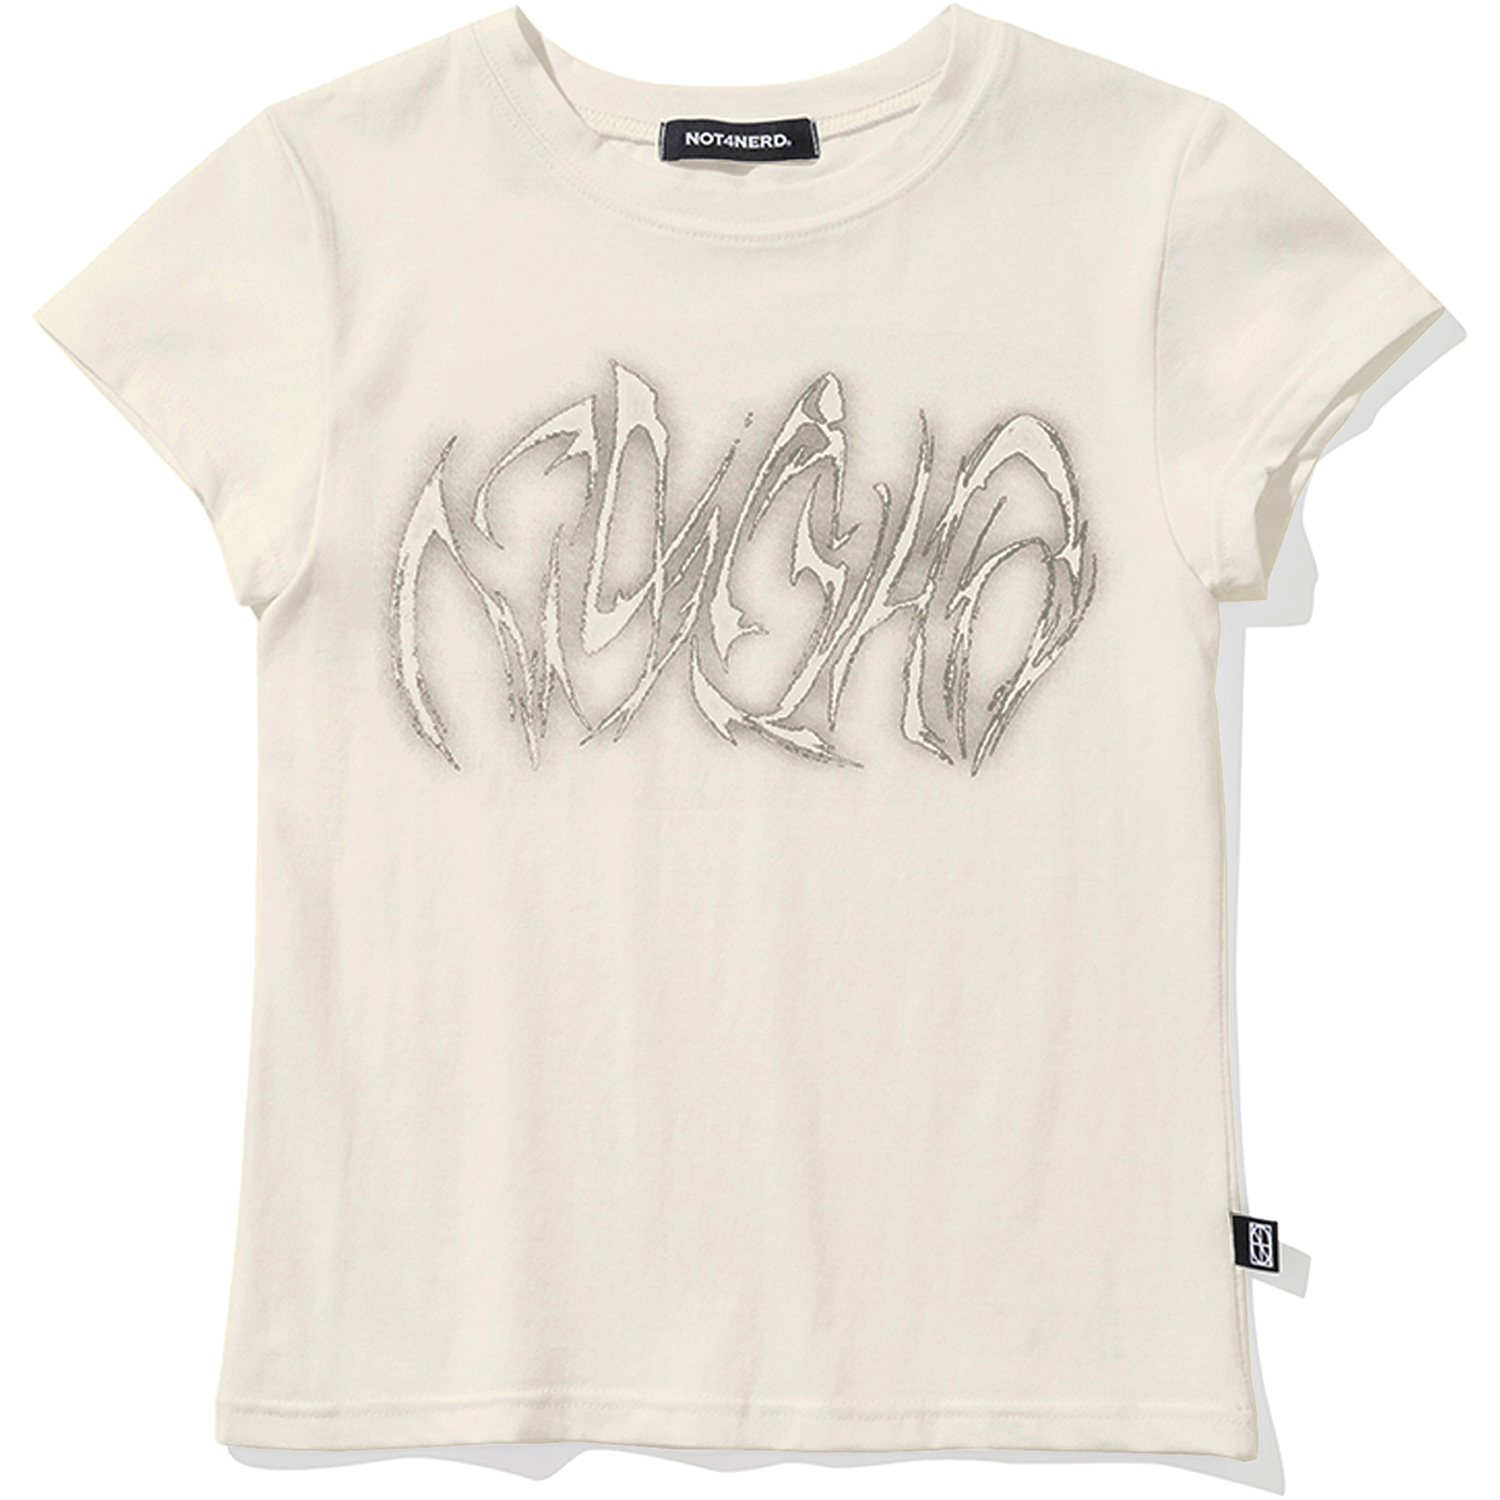 [5월 13일 예약배송] W Blur Boomerang Logo T-Shirts - Ivory,NOT4NERD